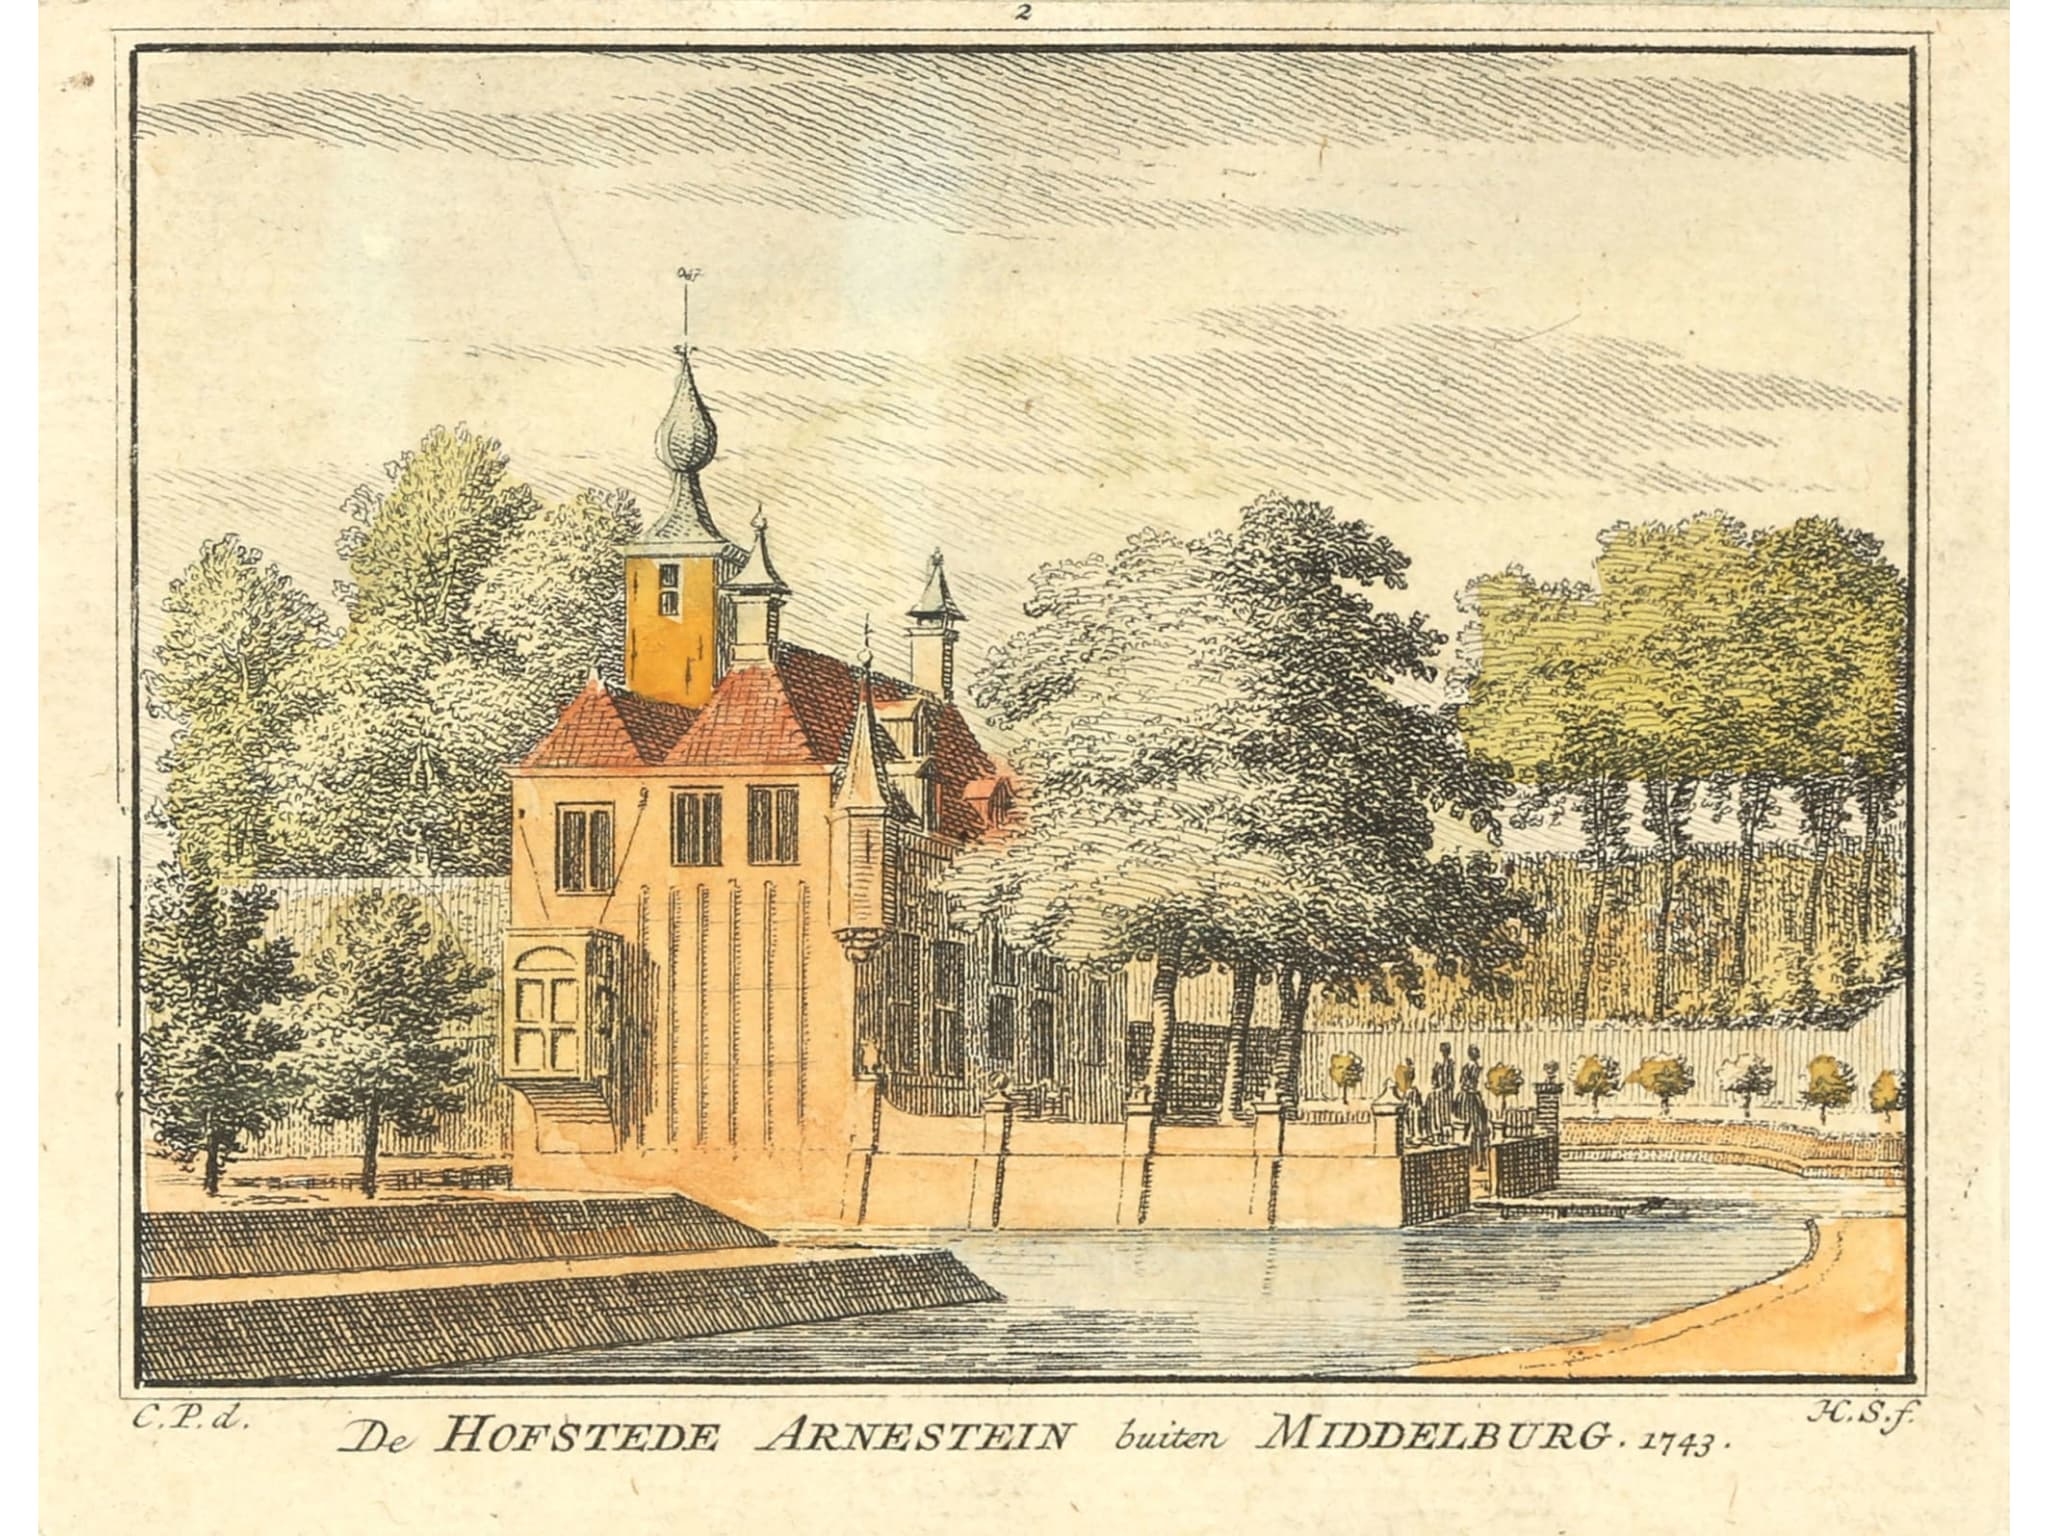 De Hofstede Arnestein buiten Middelburg. by Cornelis Pronk, Hendricus Spilman, 1743